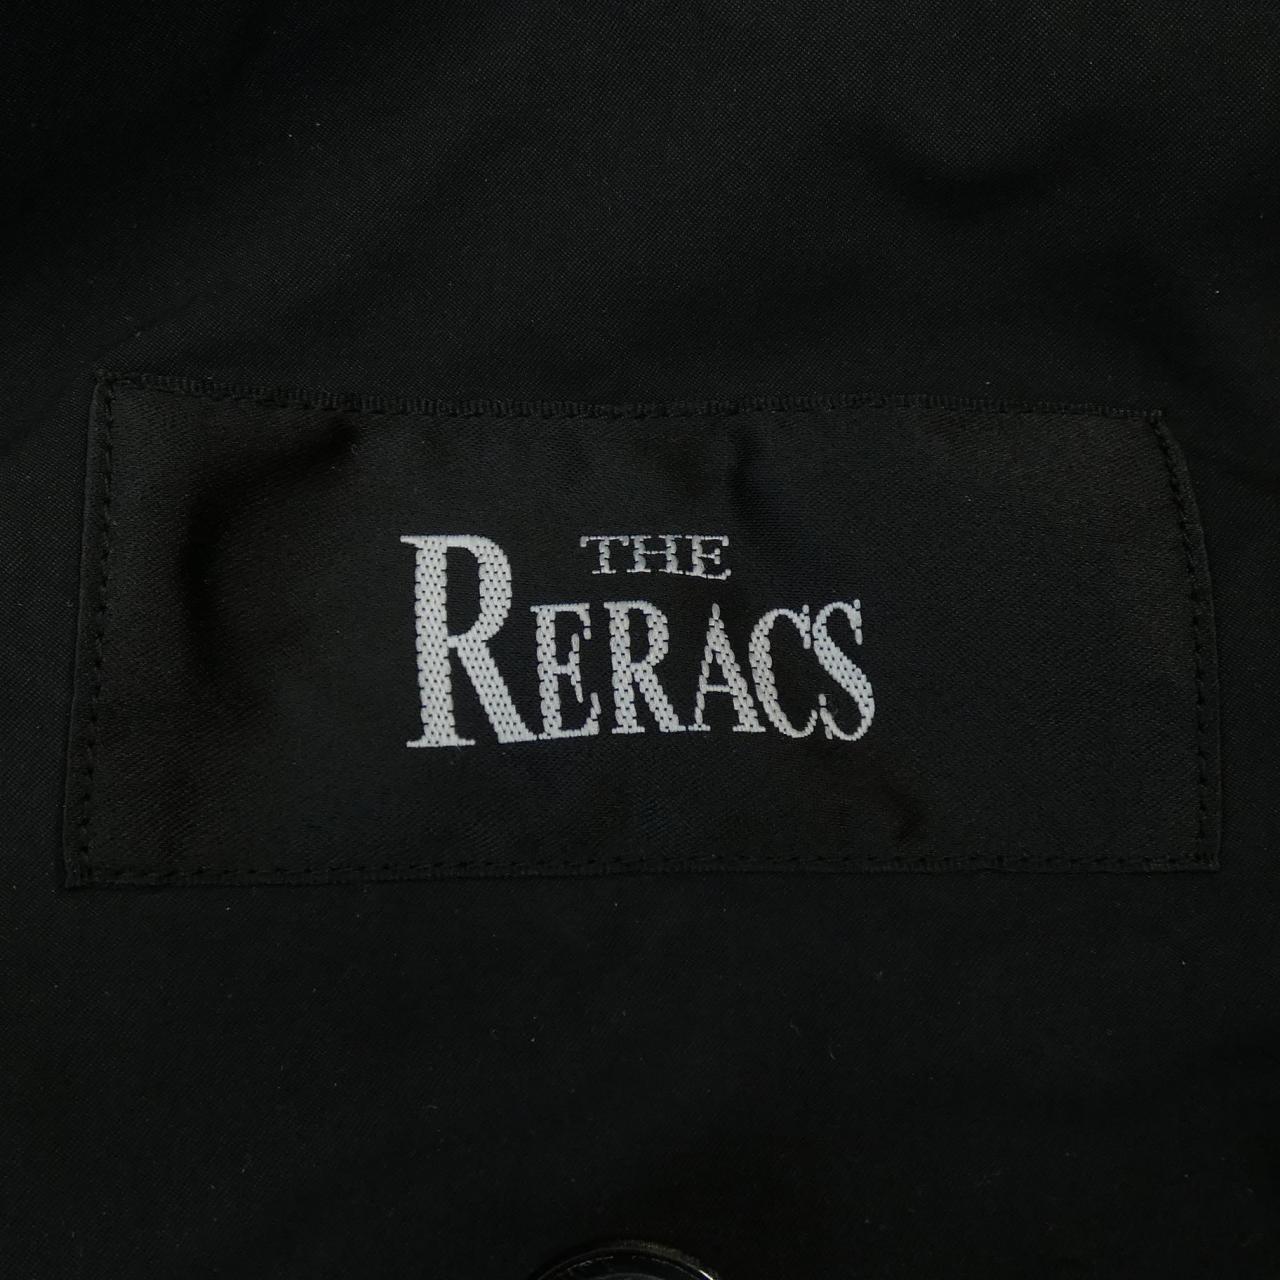 莎拉拉克THE RERACS夾克衫